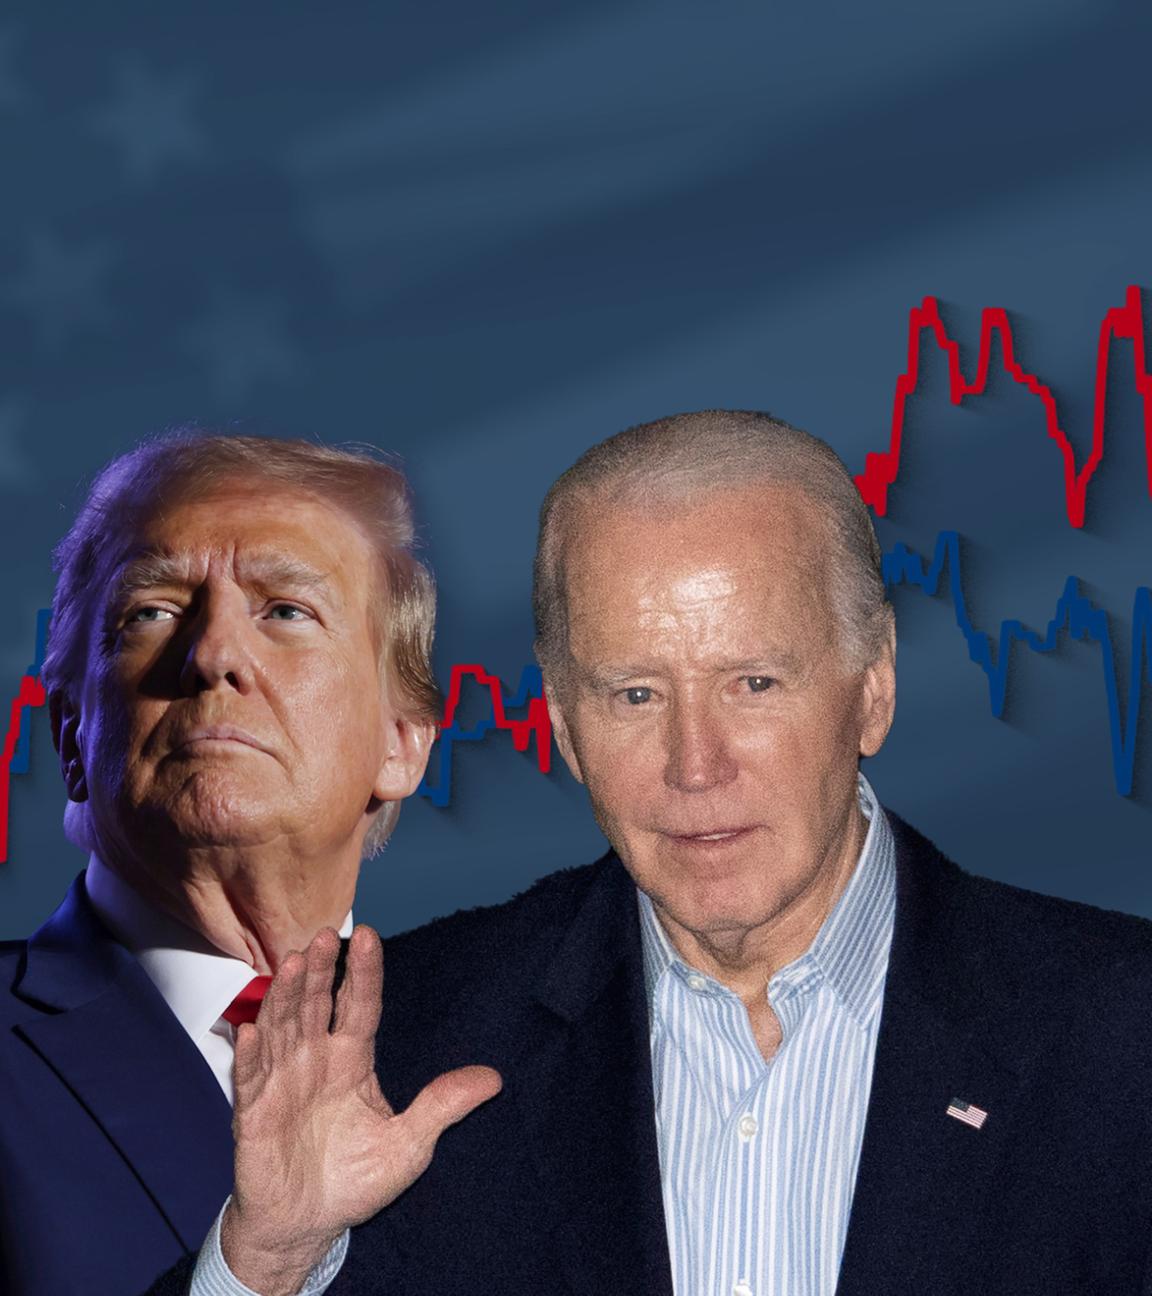 Donald Trump und Joe Biden, dahinter ein Liniendiagramm mit ihren Umfragewerten